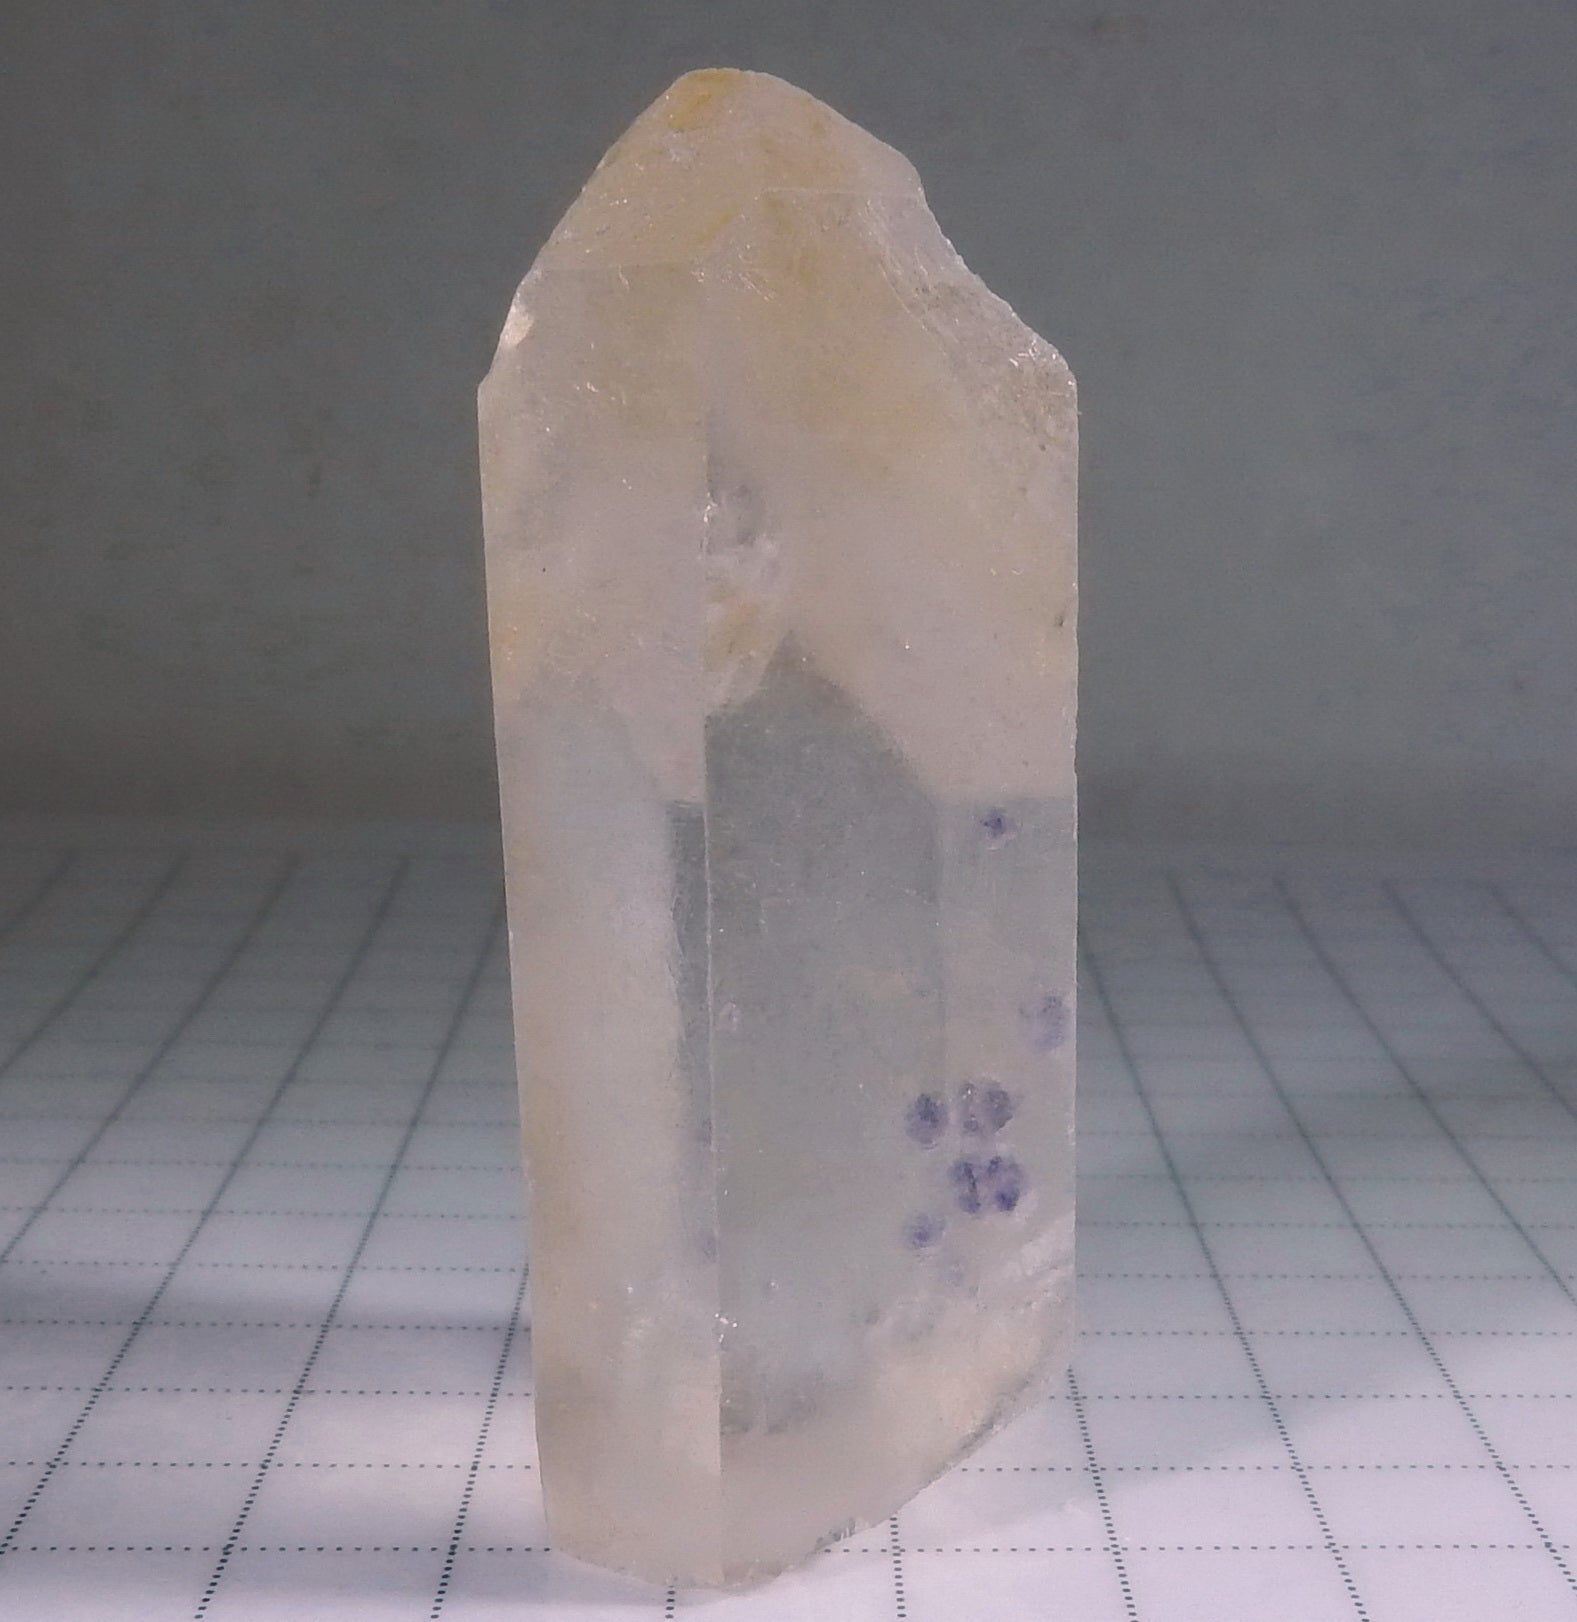 Quartz with Fluorite Inclusions - Mineral Specimen - 115ct - prettyrock.com